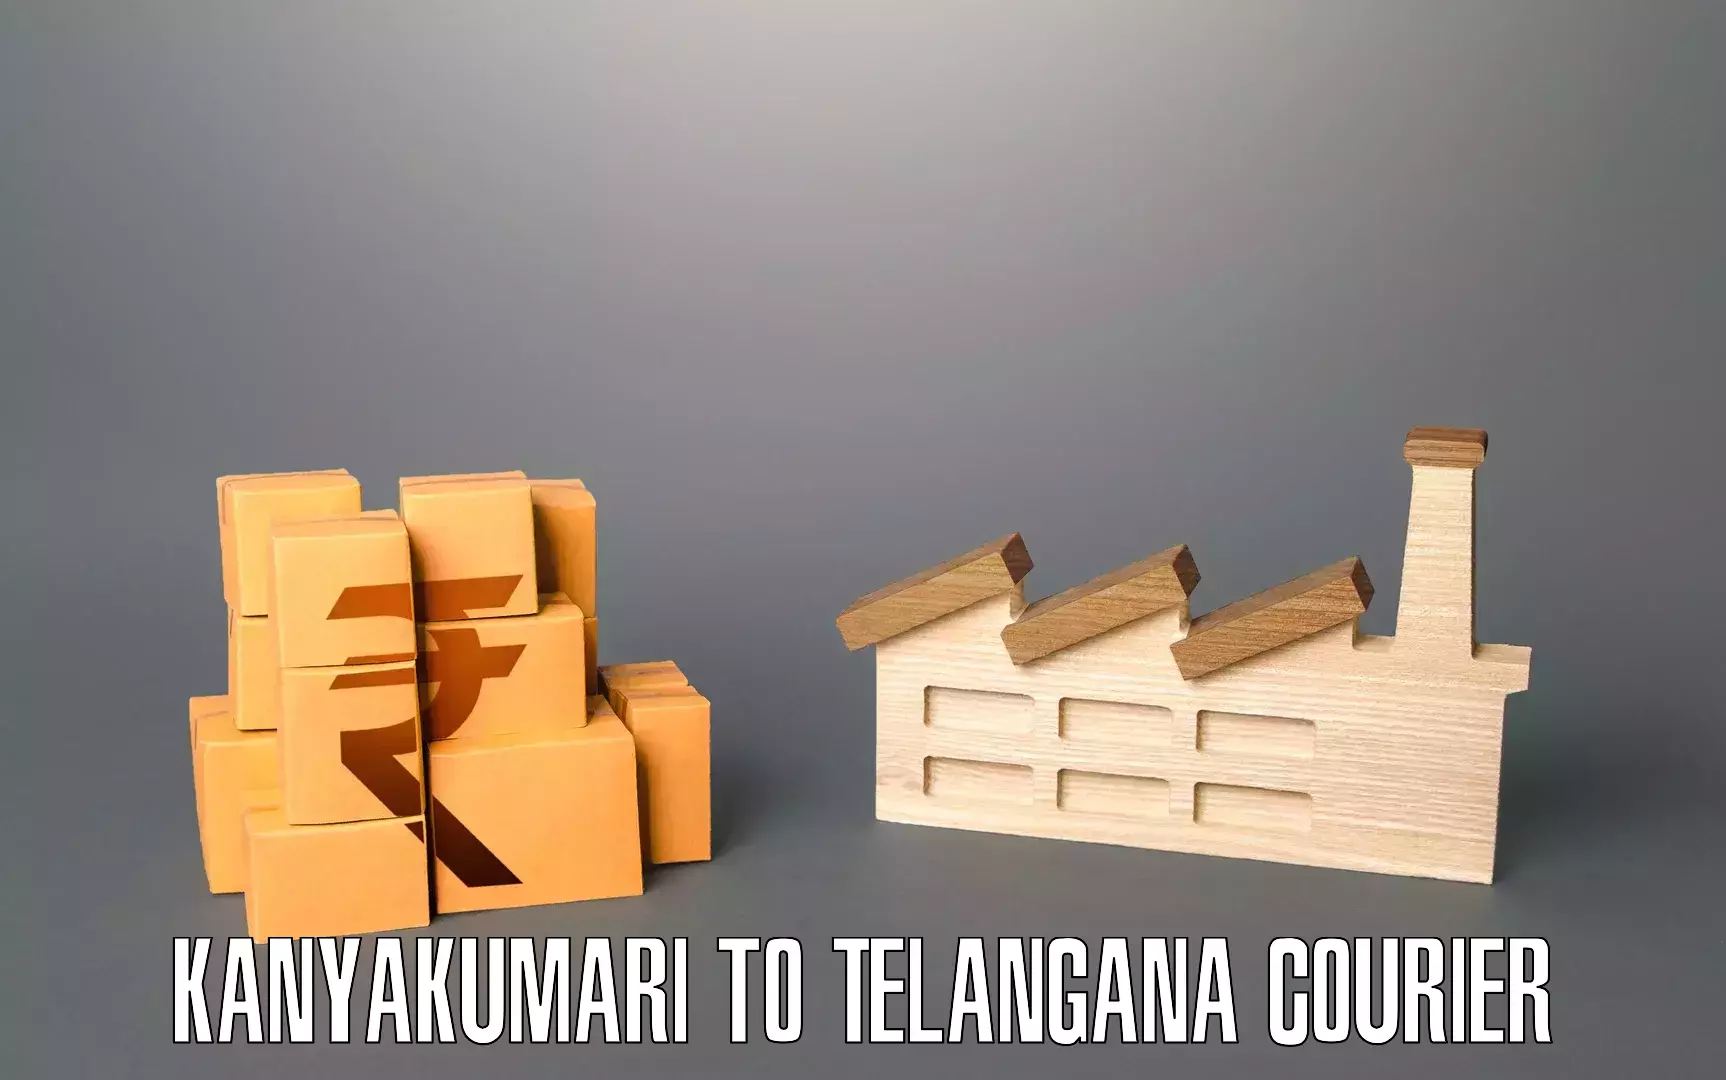 Moving and handling services Kanyakumari to Sikanderguda